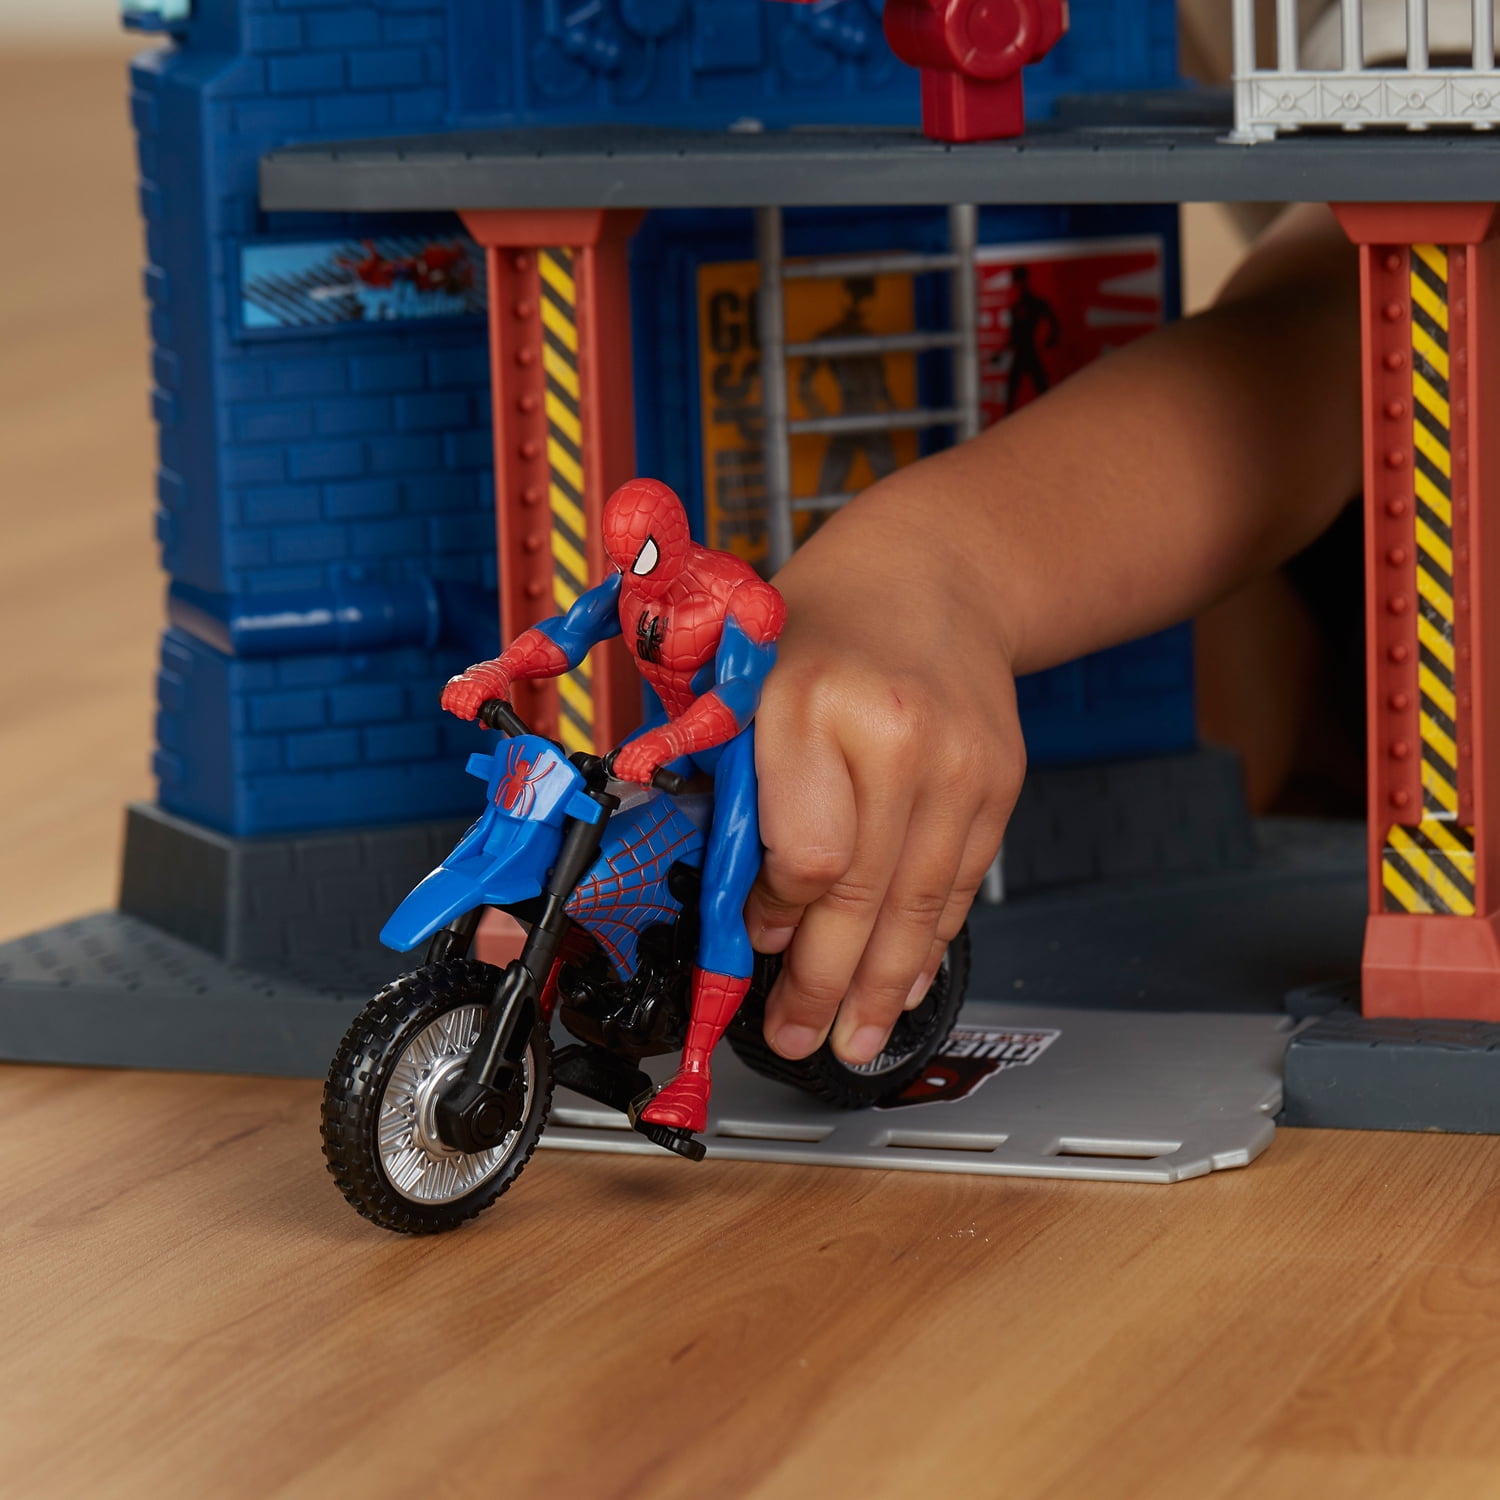 spiderman tower toy walmart